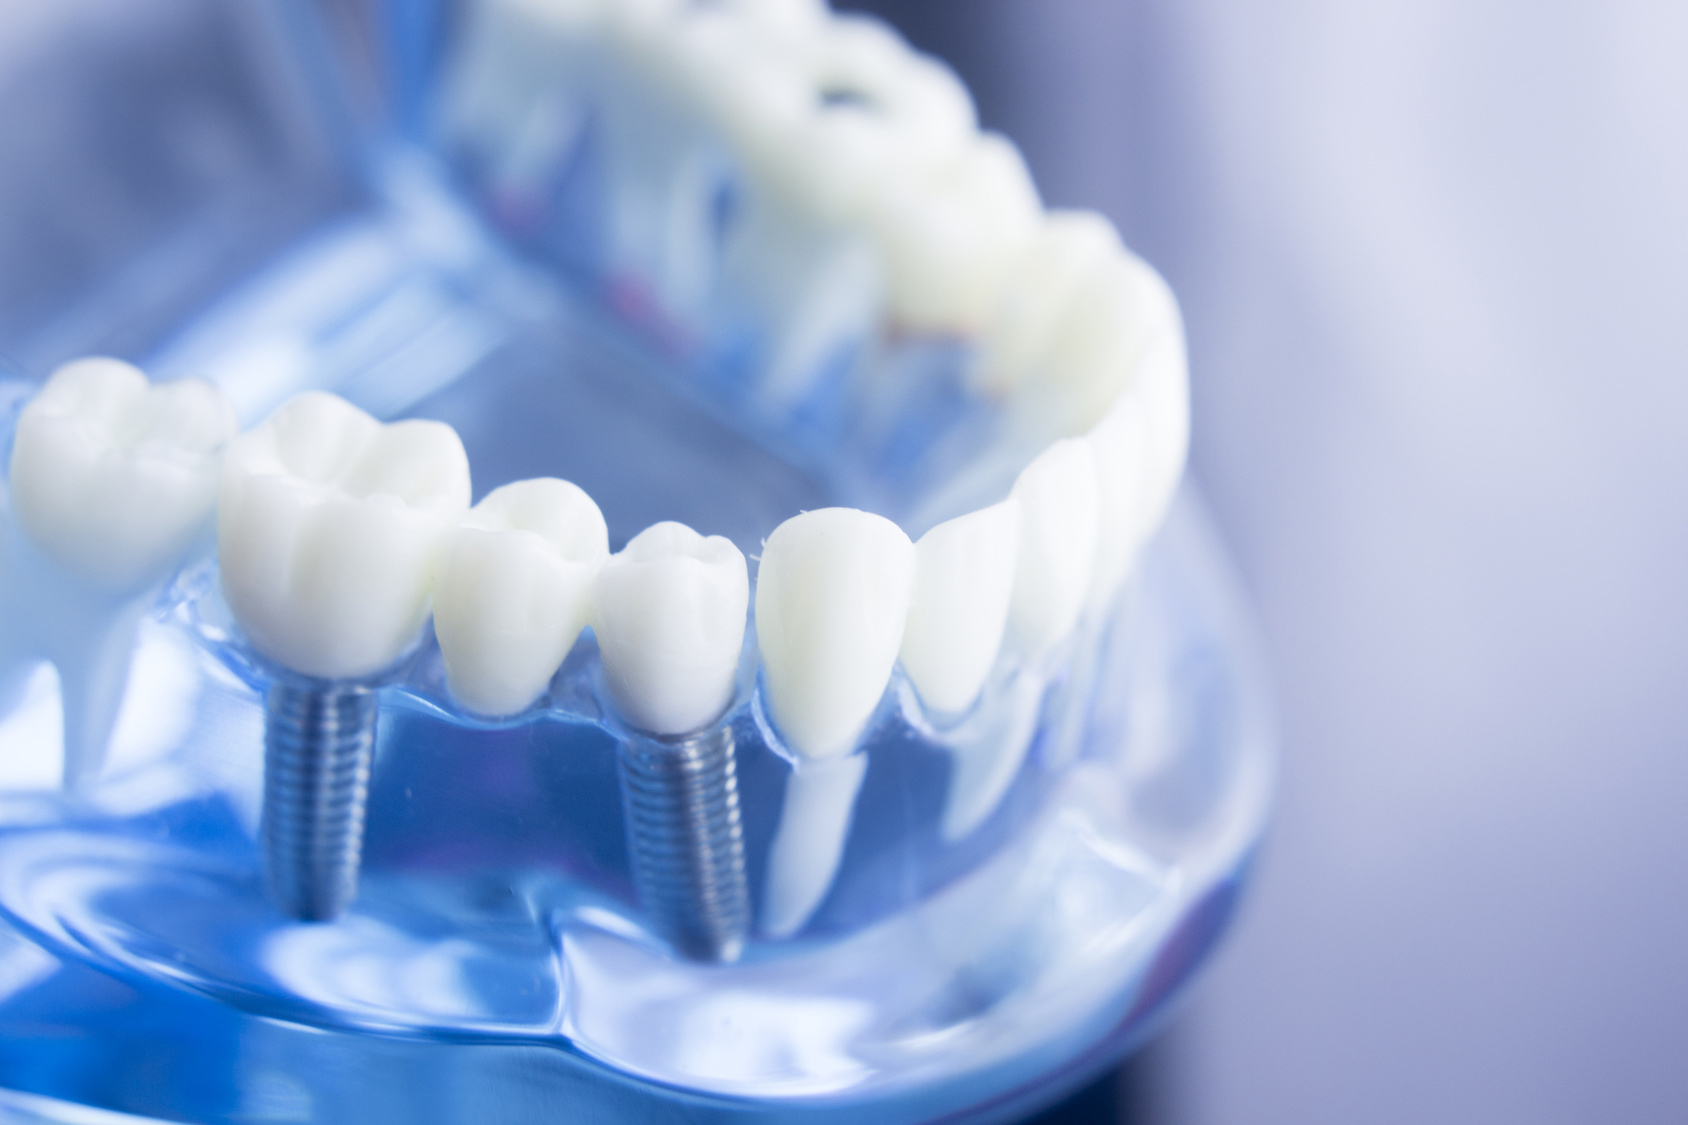 Implante osteointegrado dental, ¿qué es?